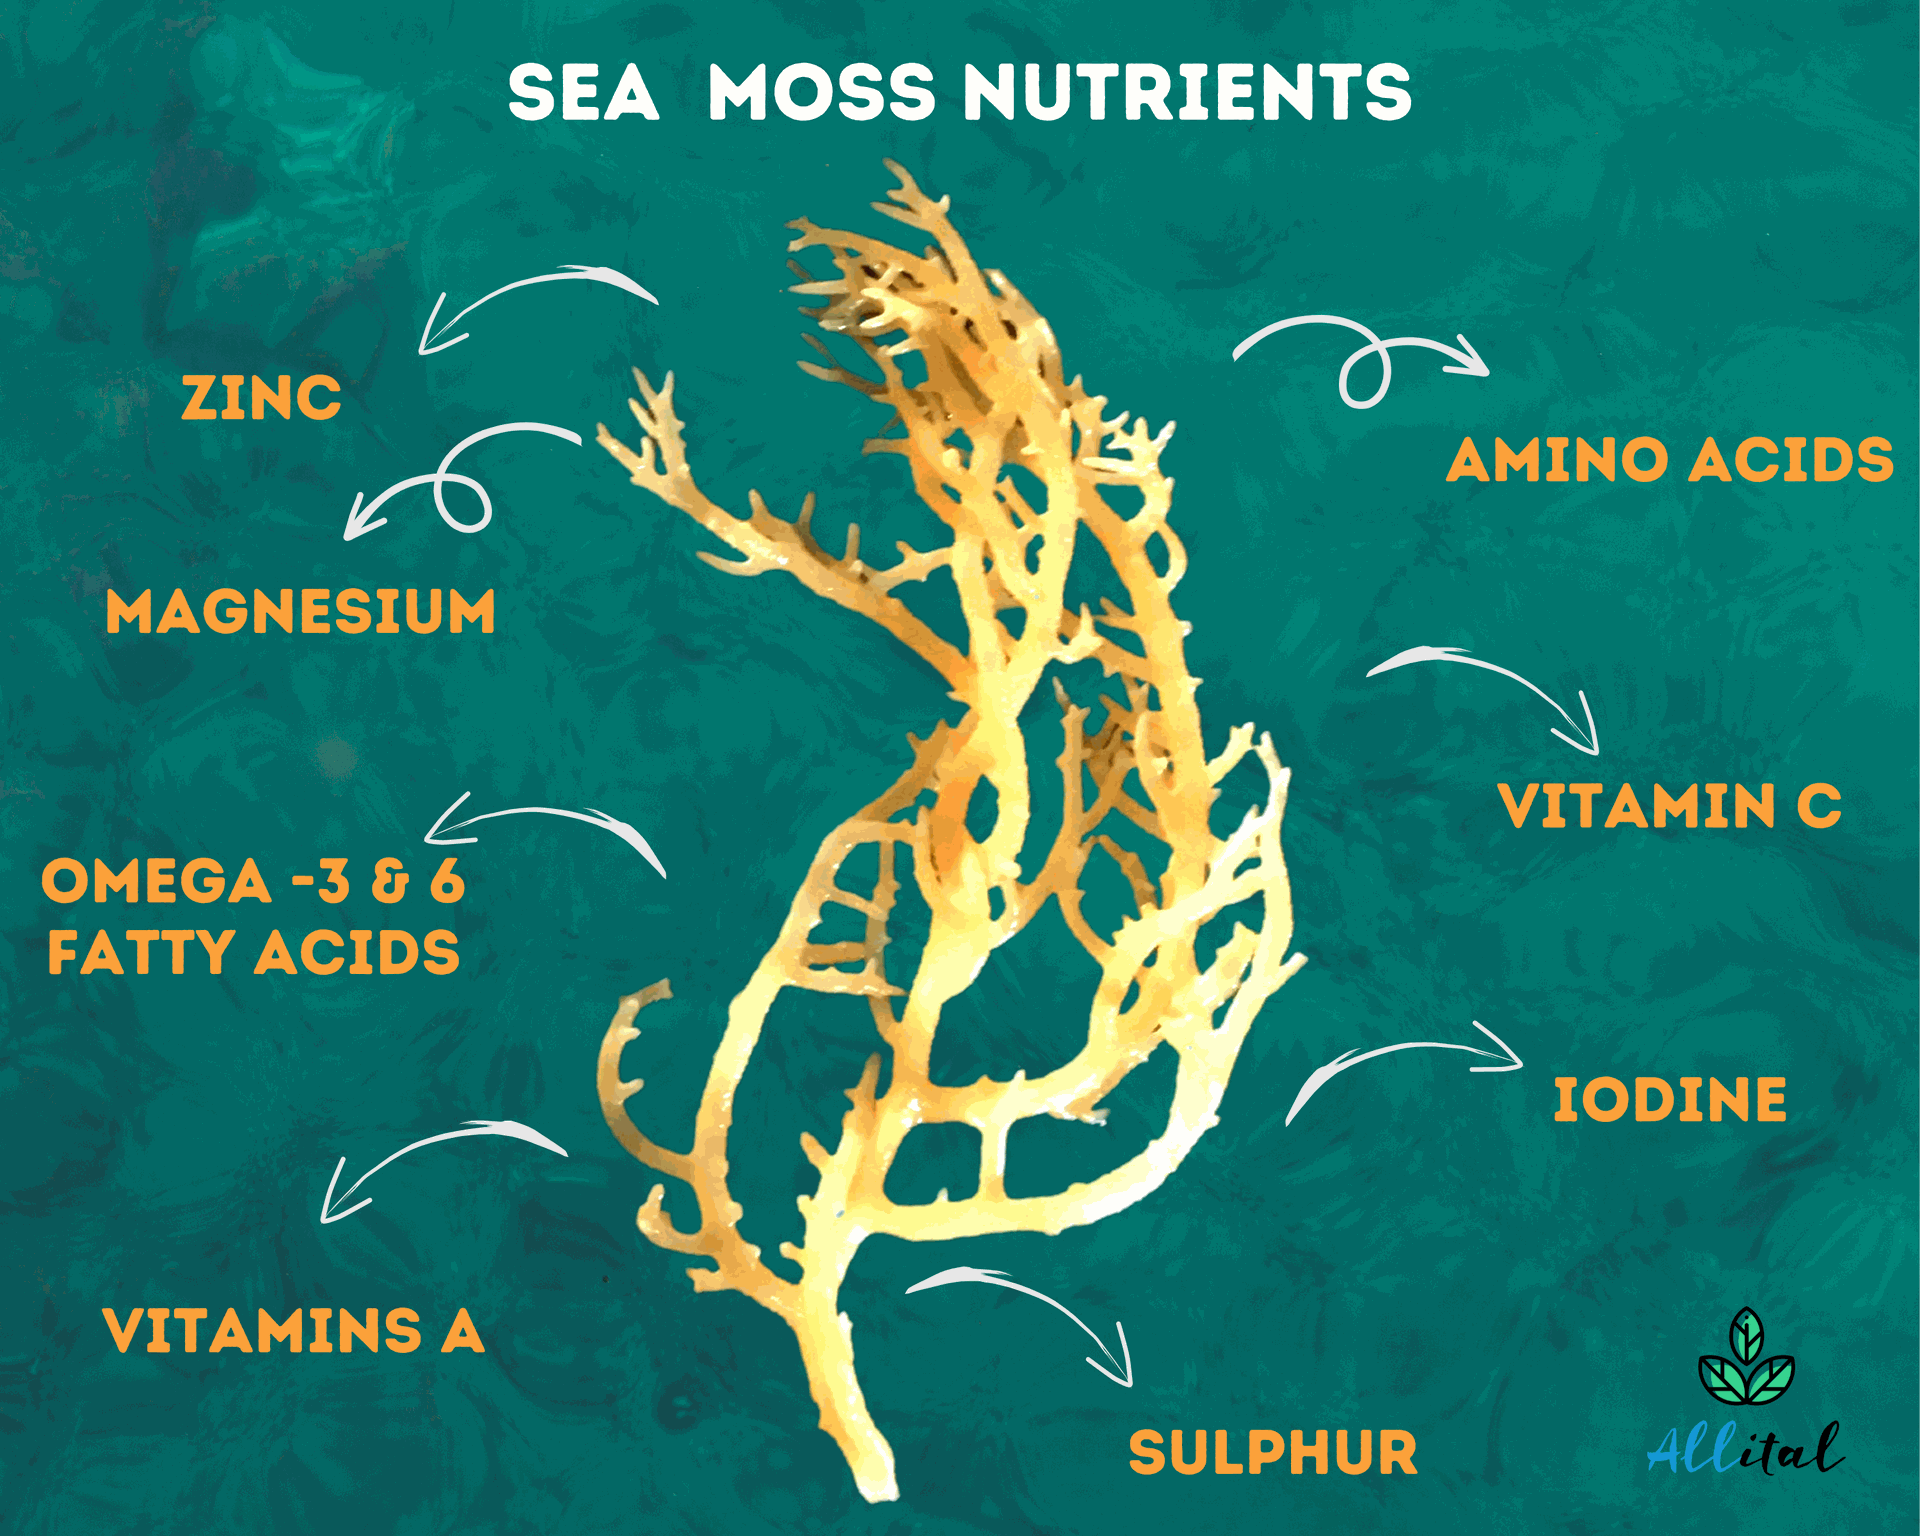 Sea moss nutrients